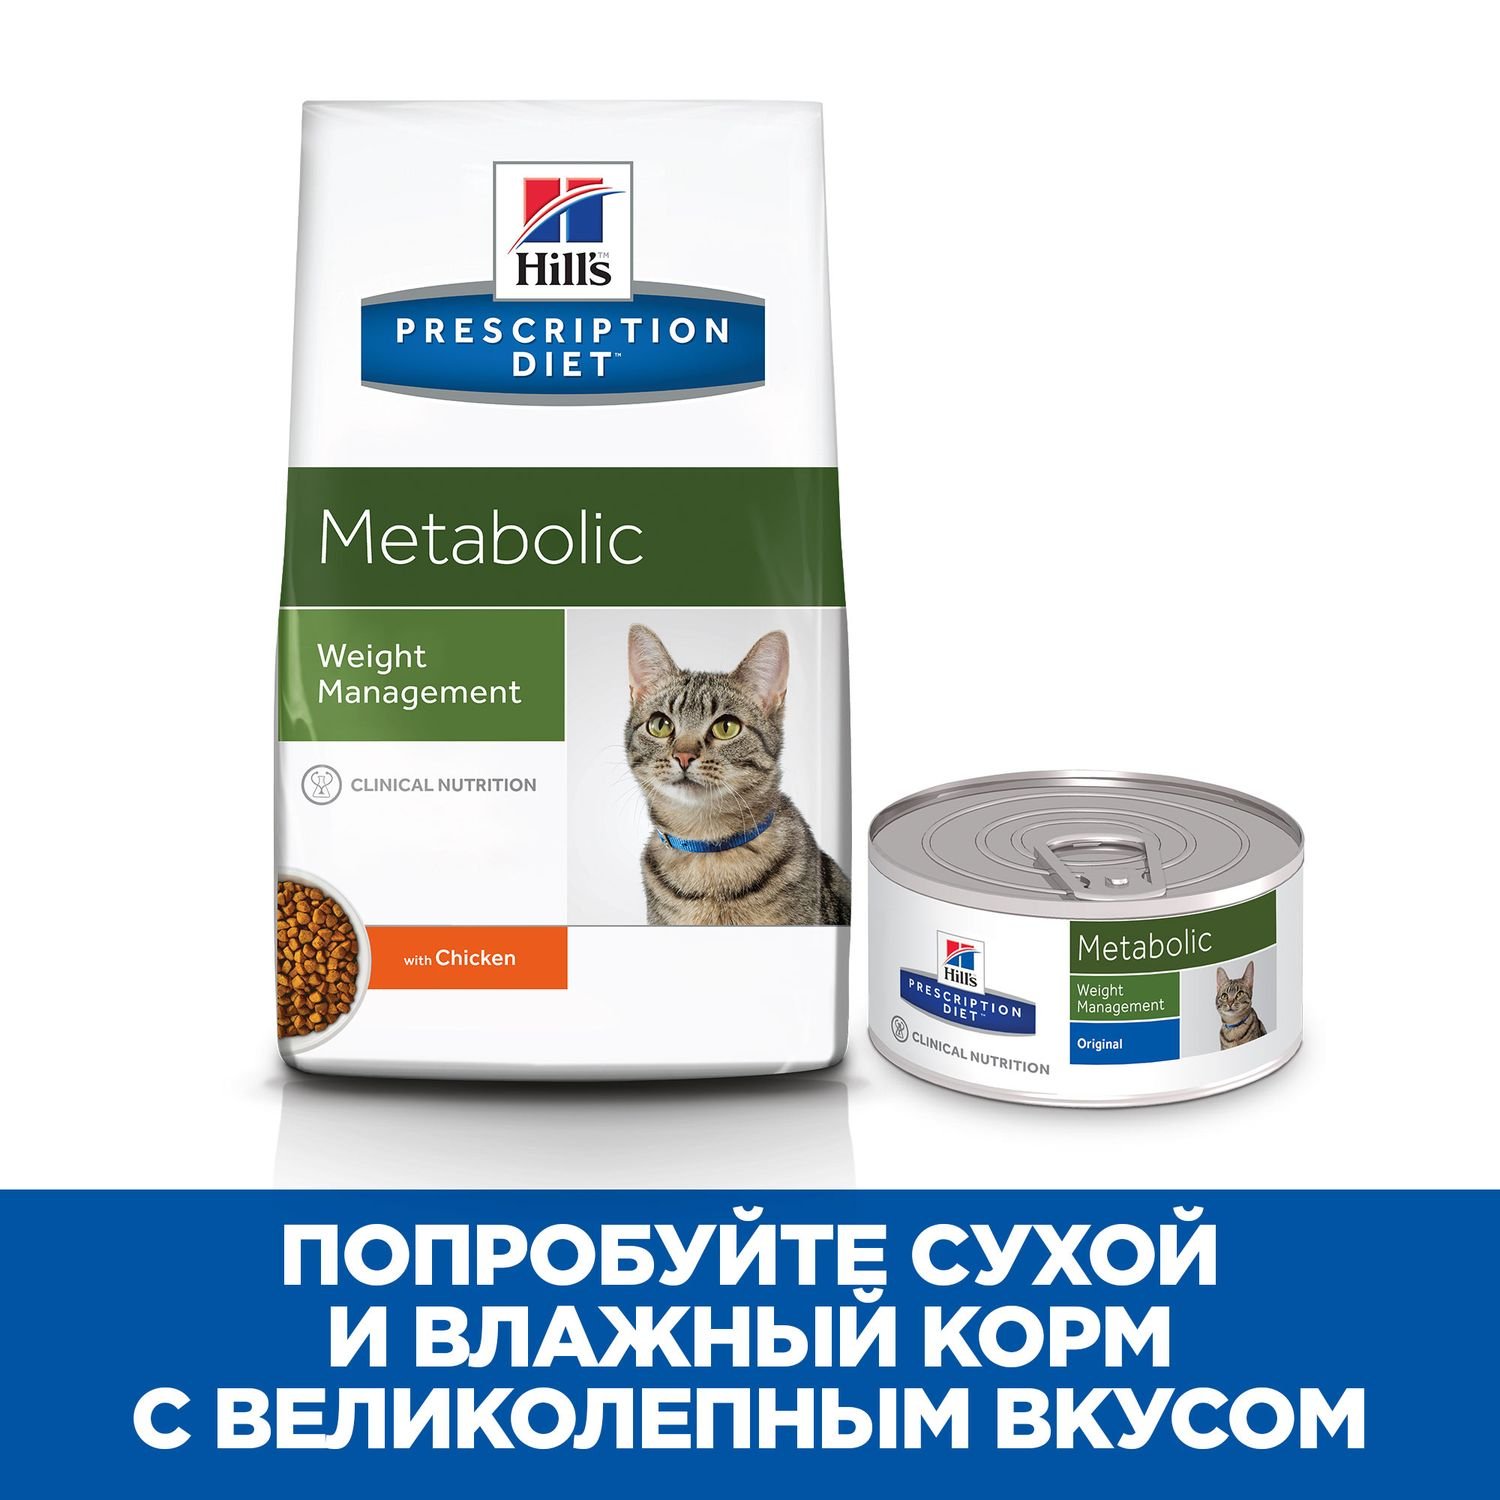 Корм для кошек HILLS 4кг Prescription Diet Metabolic Weight Management для оптимального веса с курицей сухой - фото 7